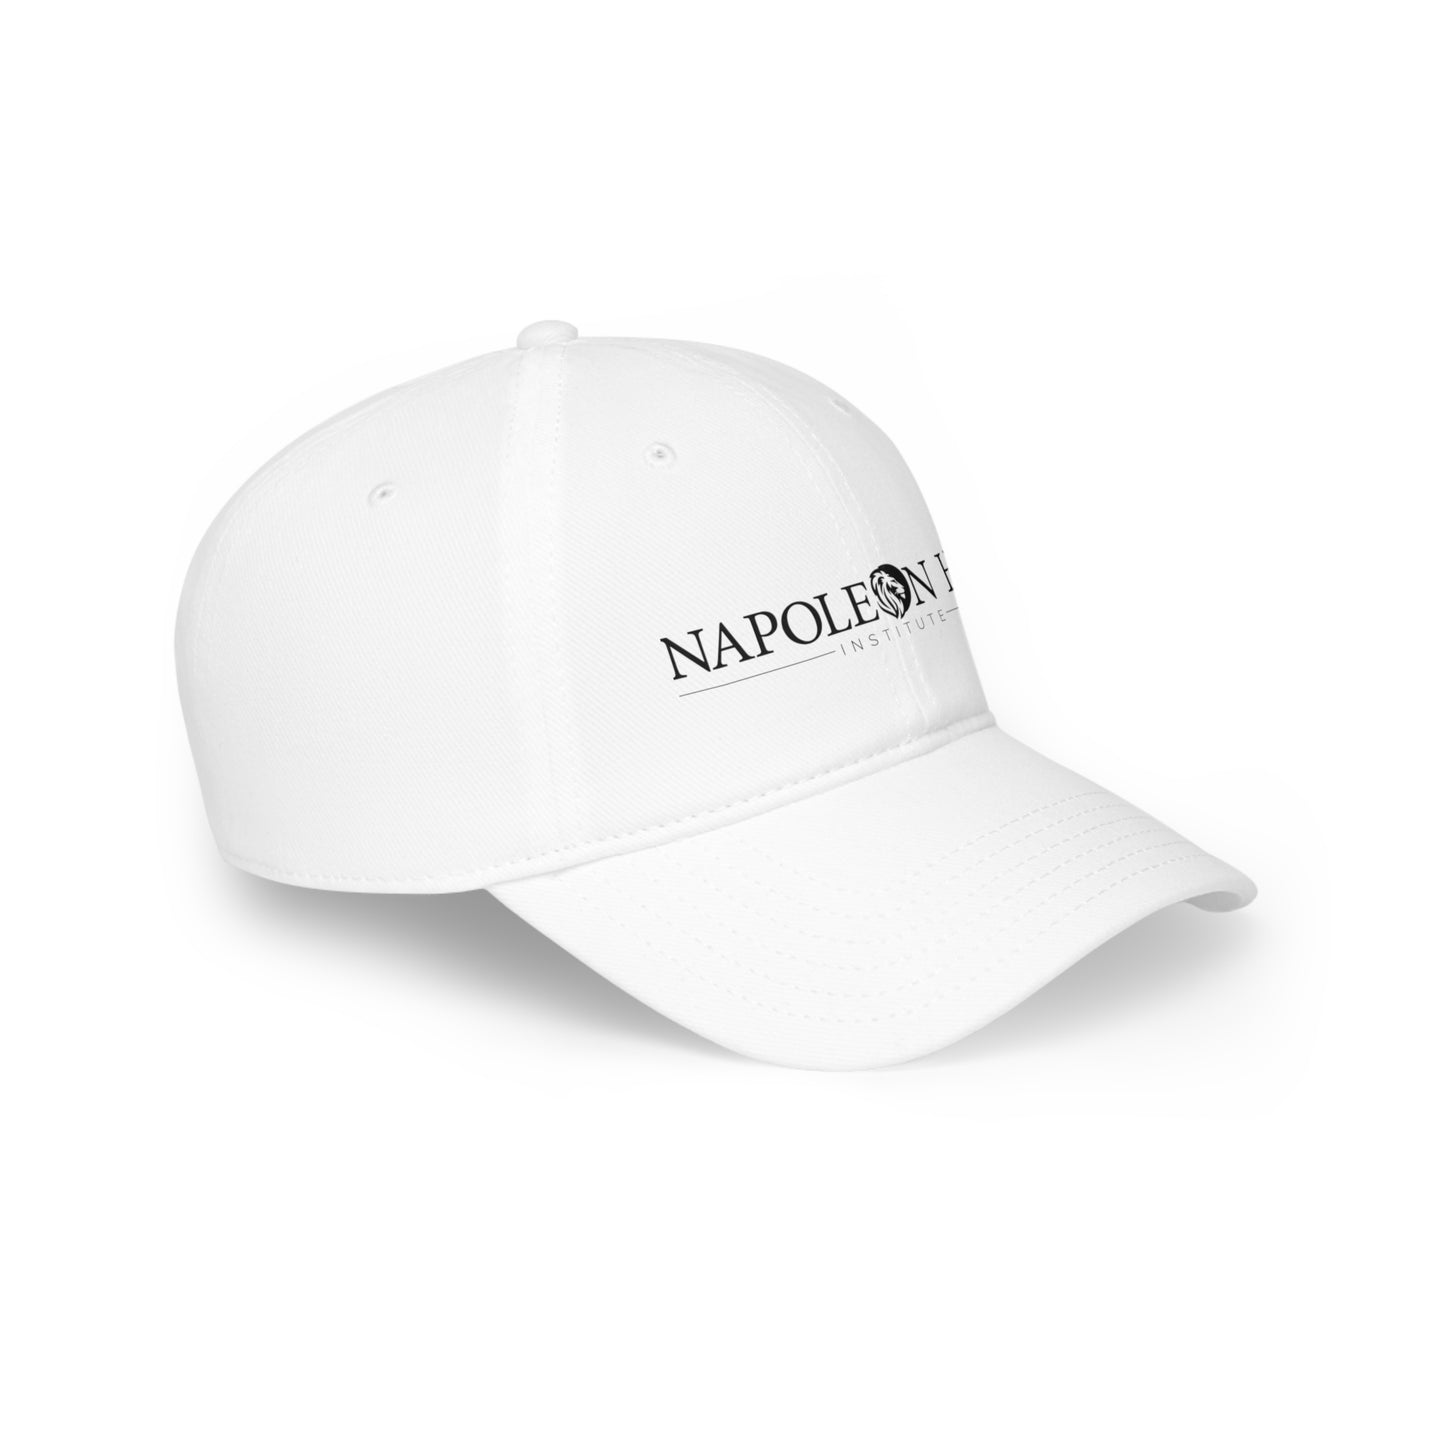 Napoleon Hill Institute Cap